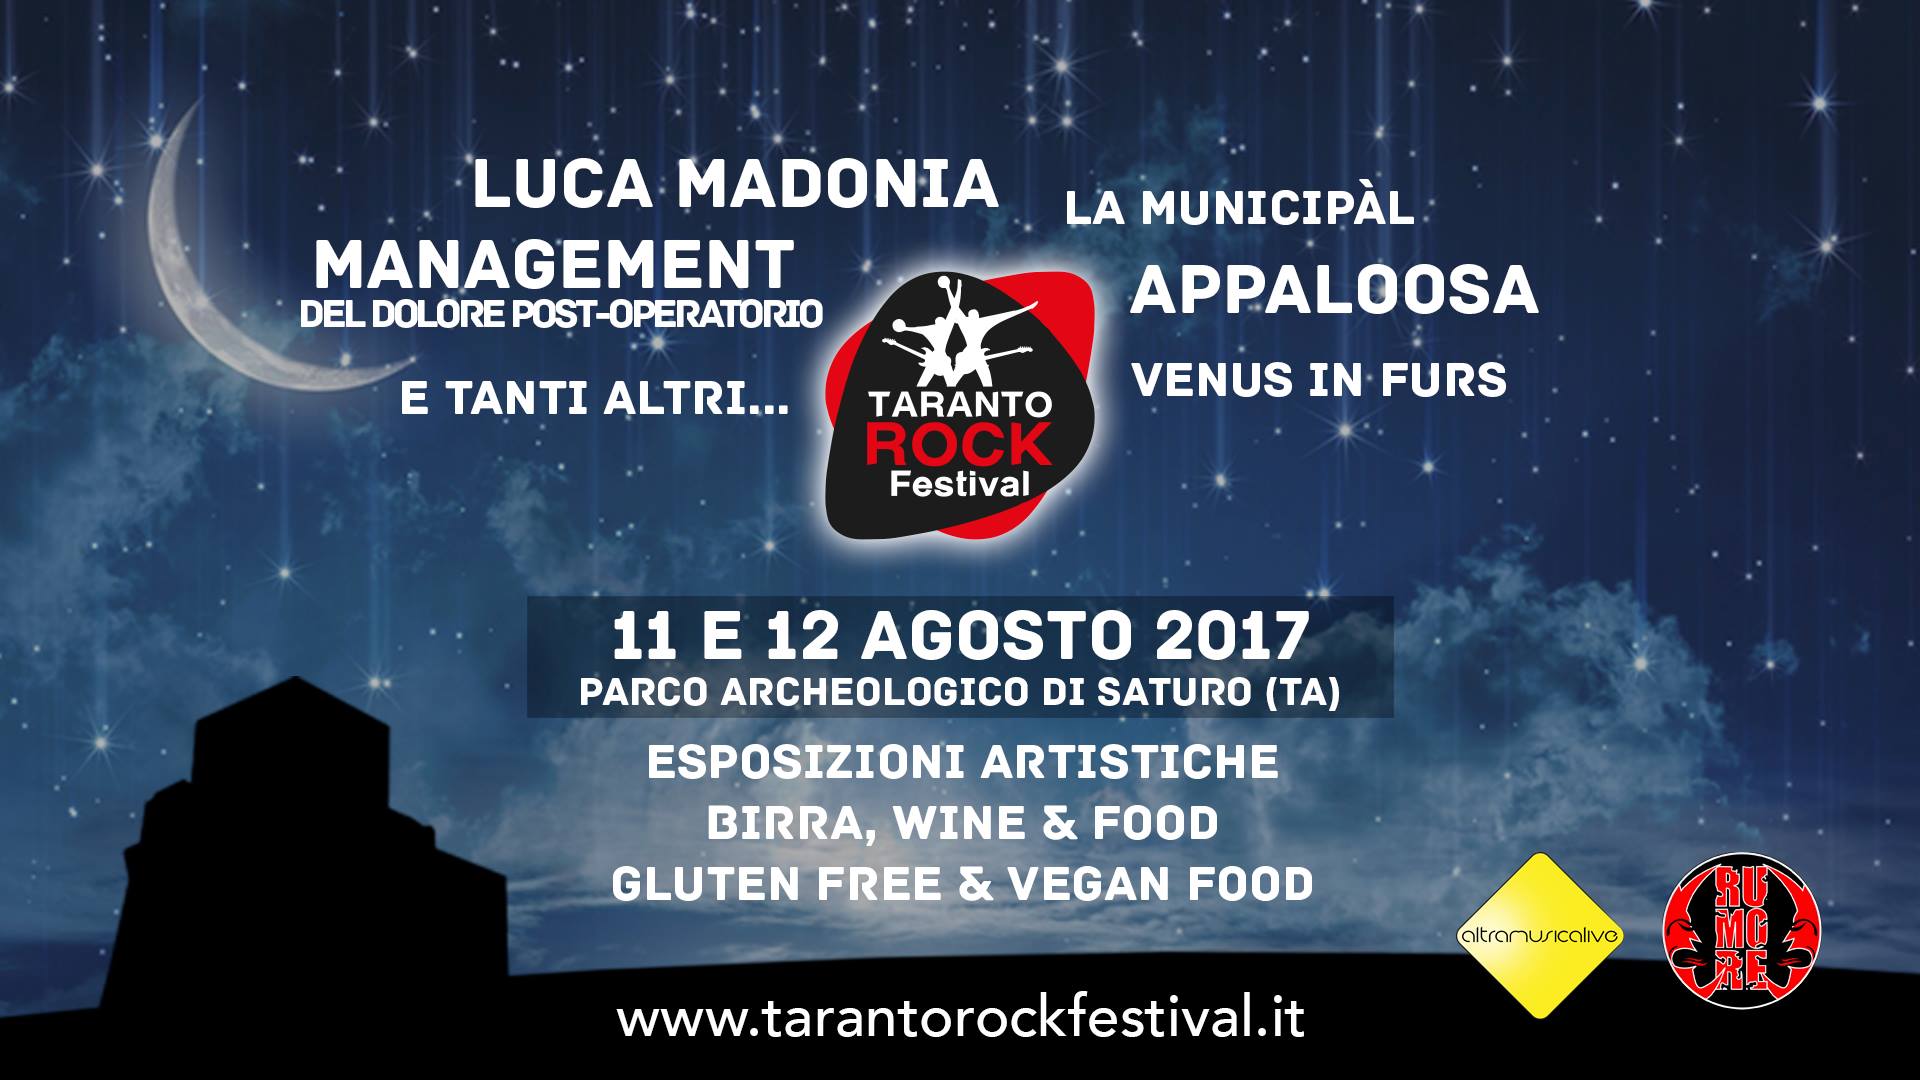 Taranto Rock Festival 2017 @Parco Archeologico di Saturo